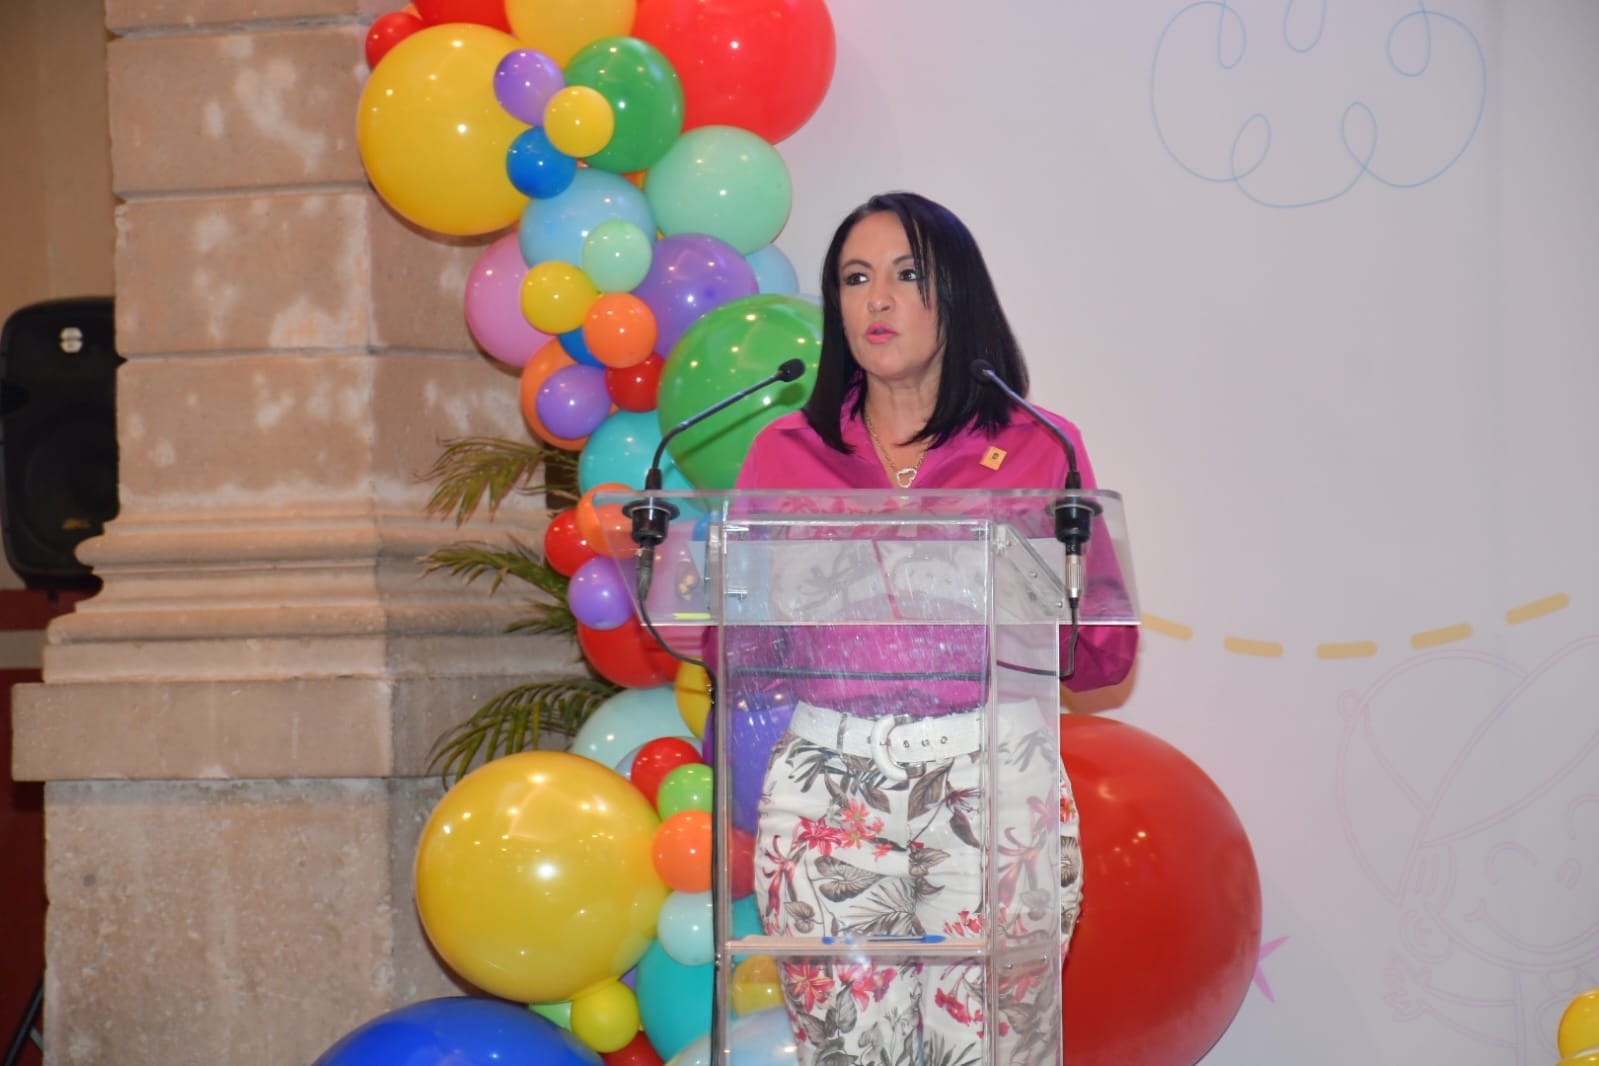 Celebra Lupita Chagolla, la voz de niñas y niños en el Parlamento Infantil